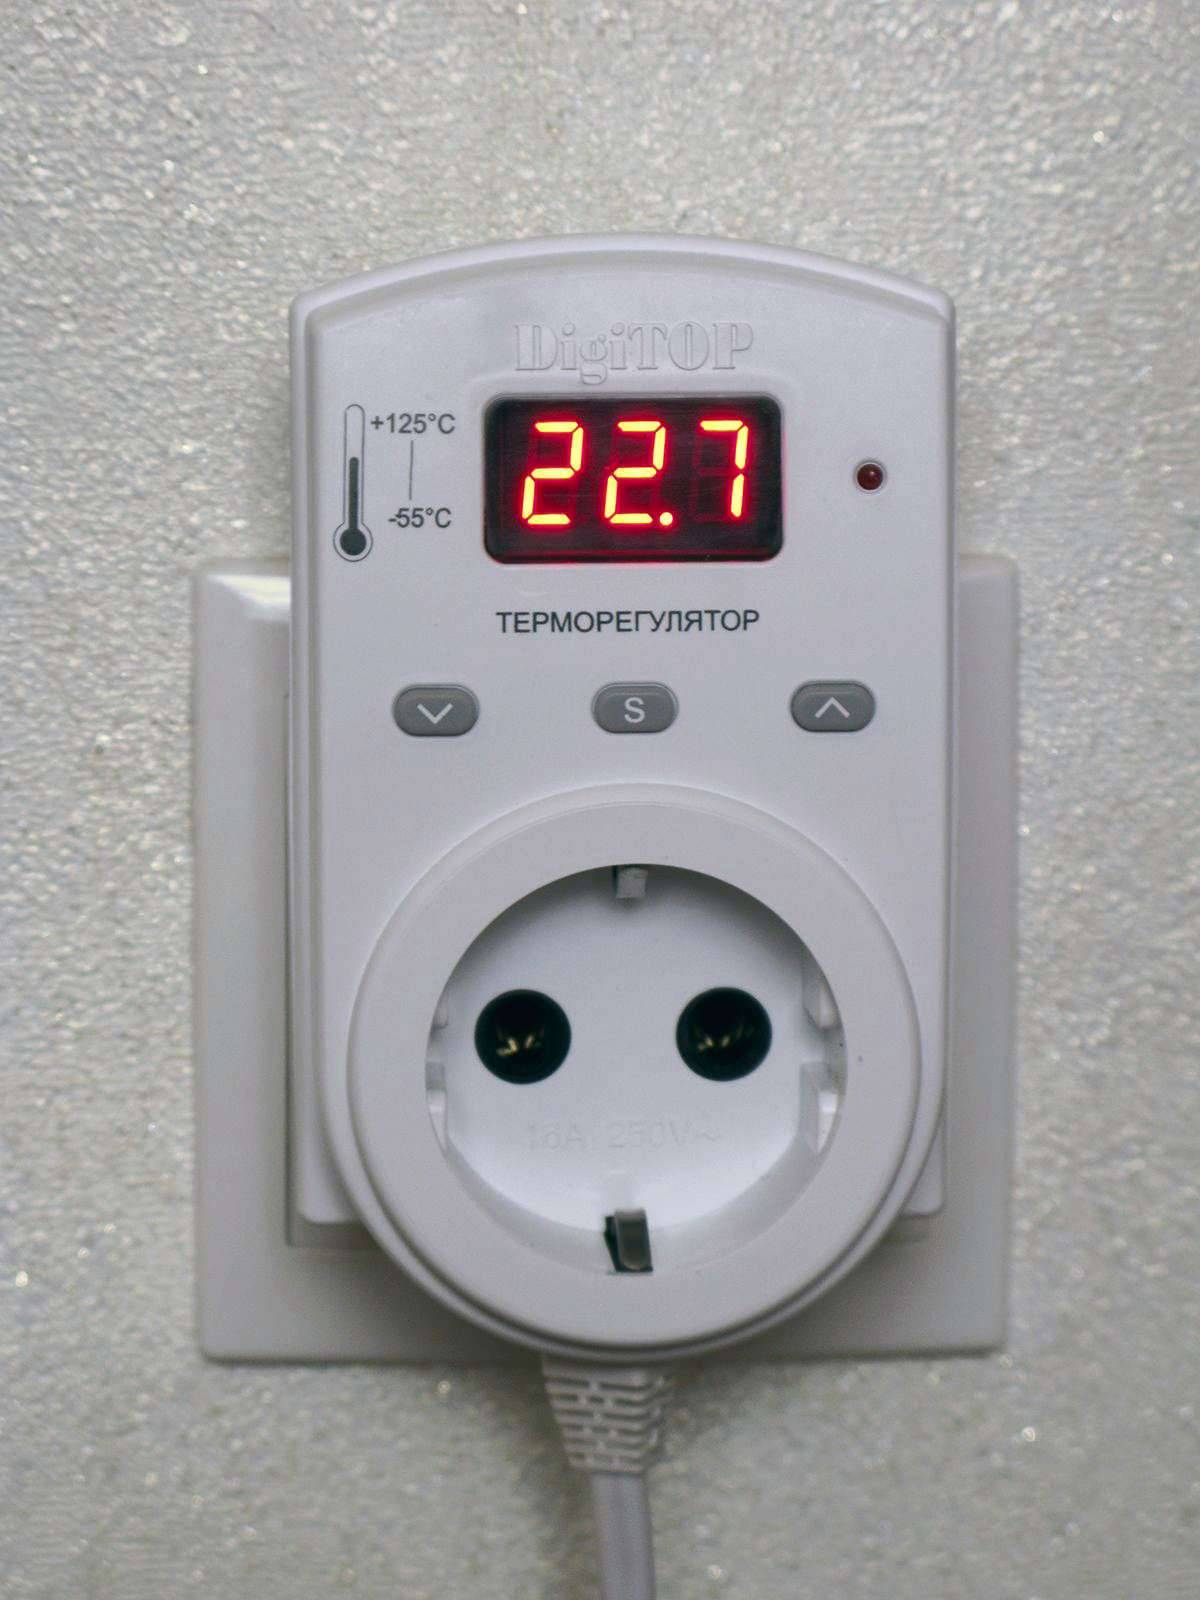 Благодаря комнатному термостату для газового котла в доме всегда будет идеальная температура!